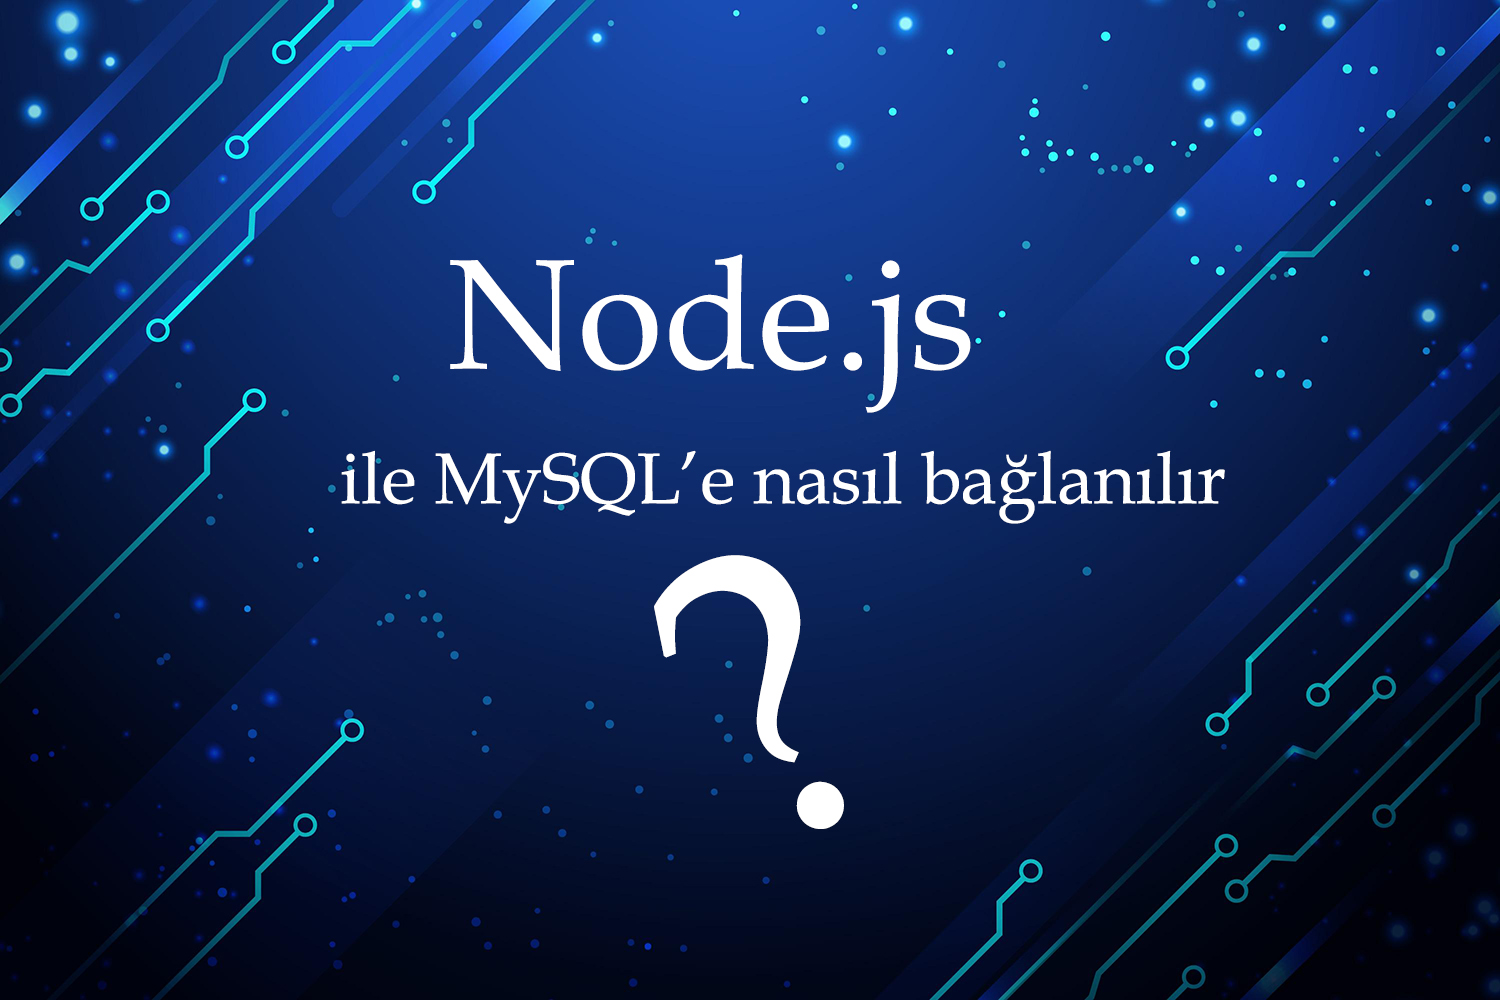 Node.js ile MySQL'e nasıl bağlanılır?